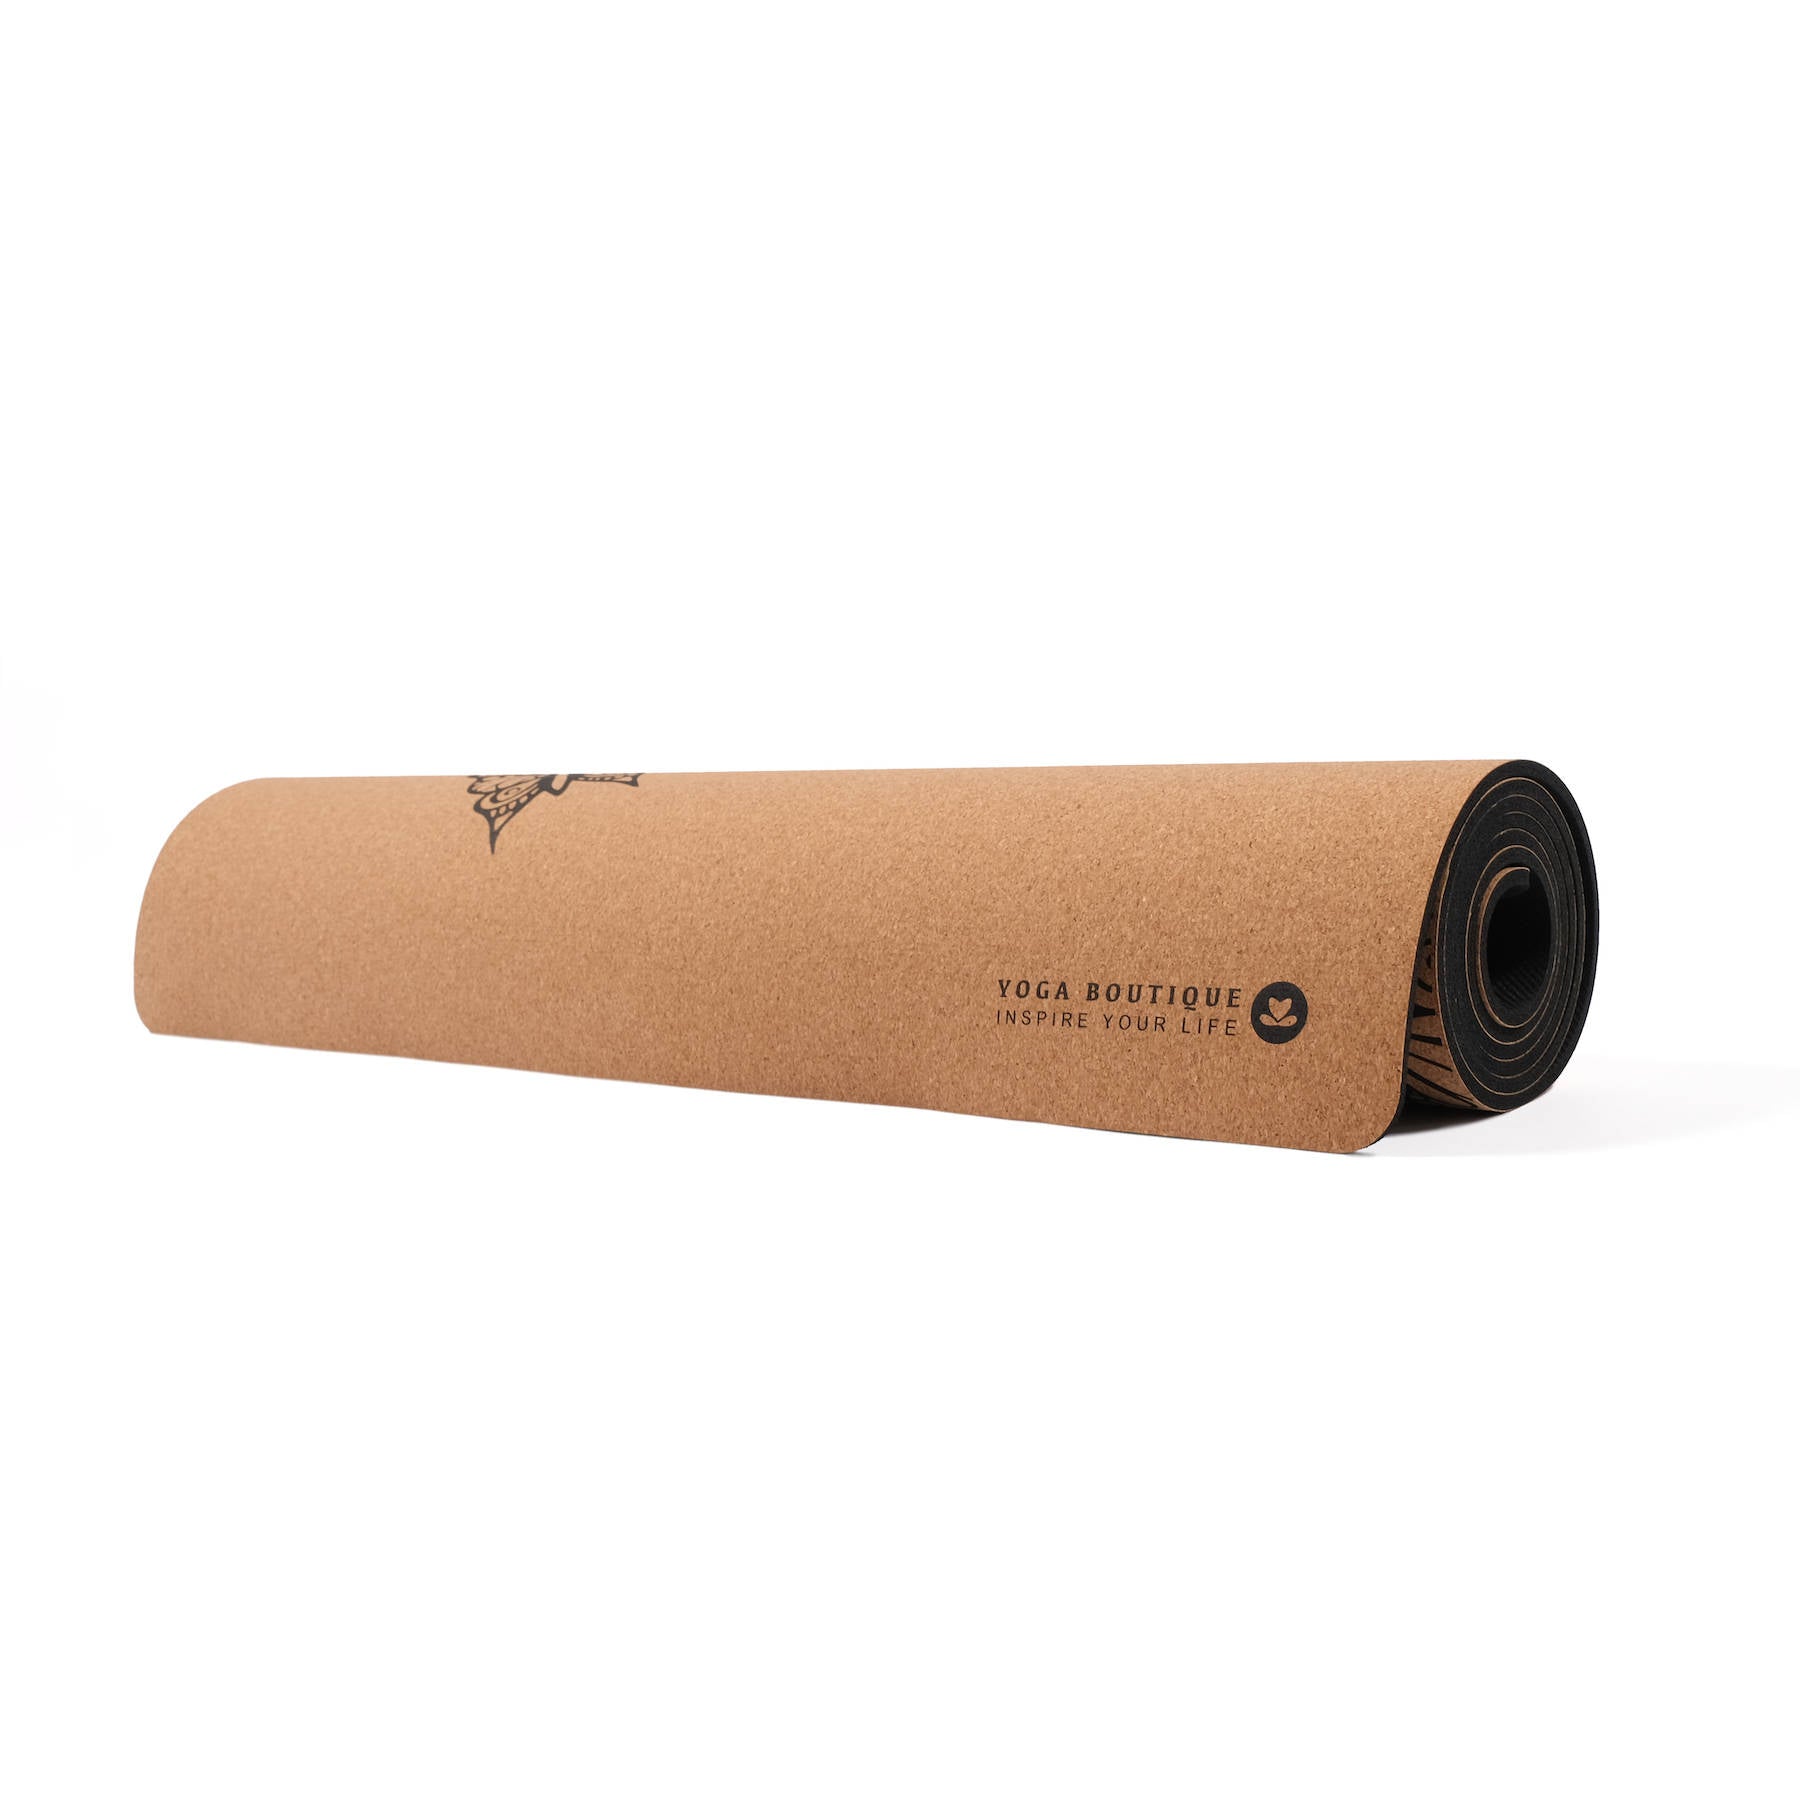 Tappetino da yoga Cork Tropical nero Senza PVC, biodegradabile